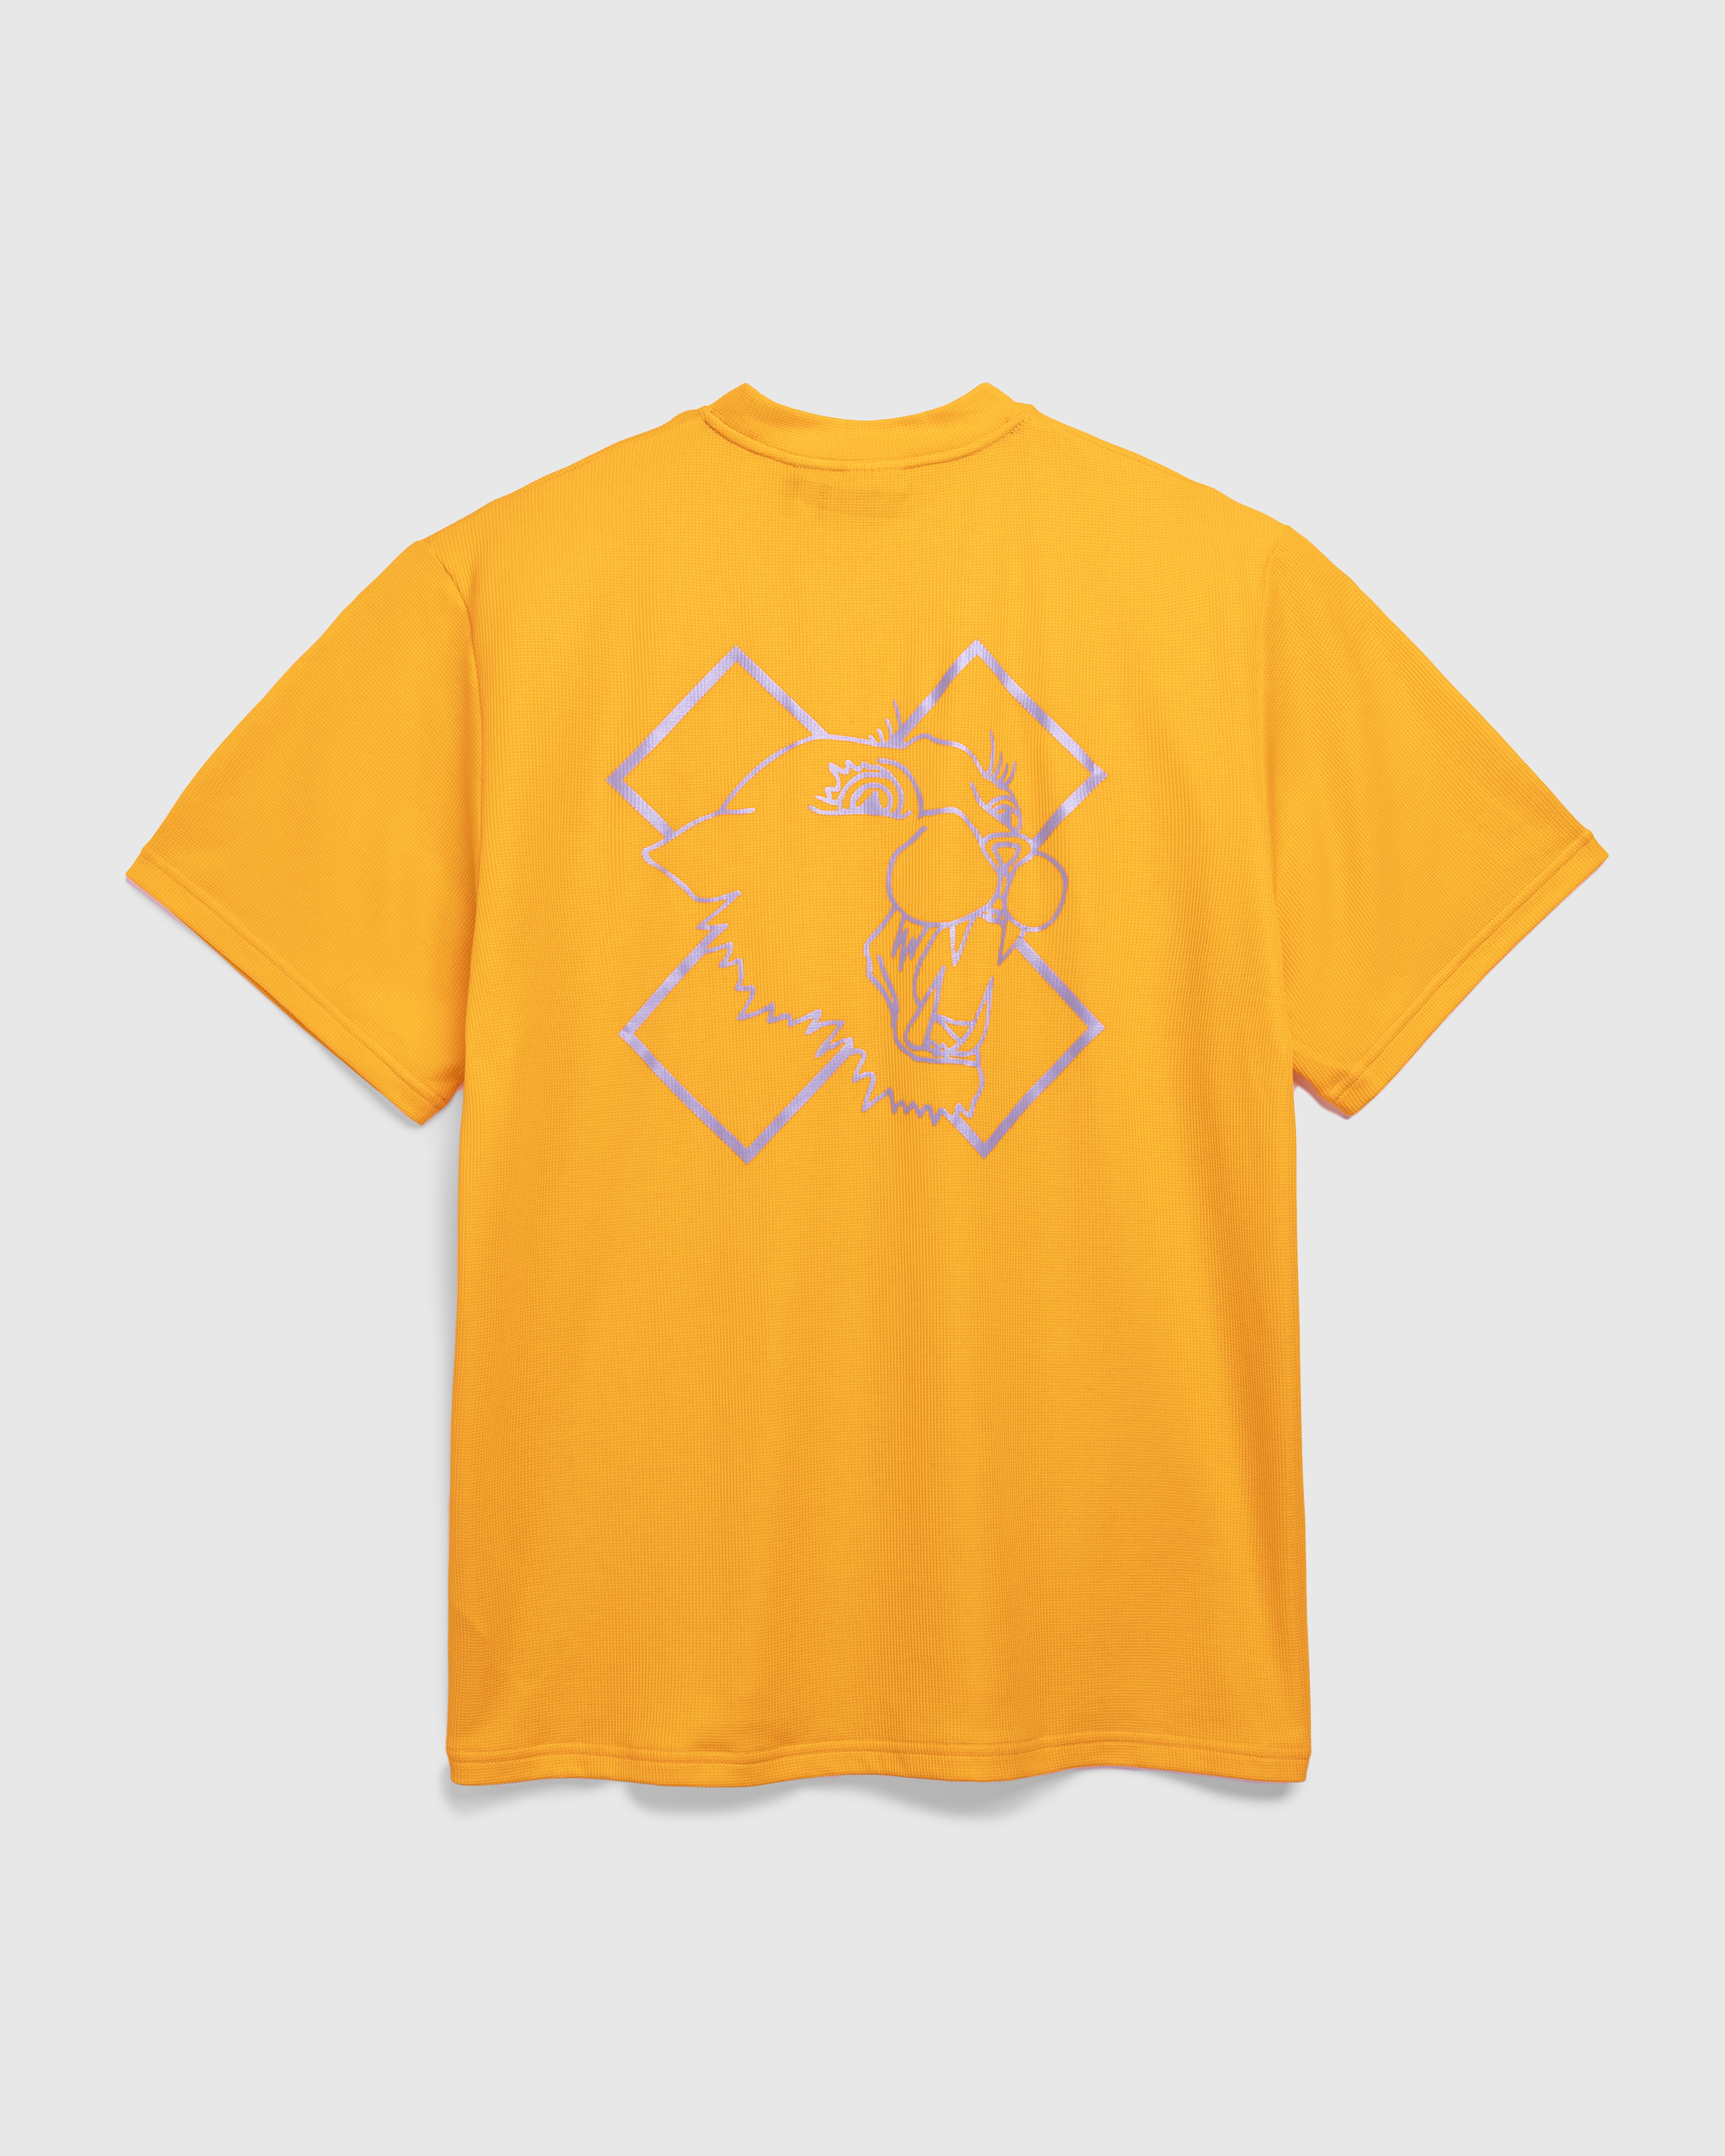 Nike x Patta – Running Team T-Shirt Sundial - T-Shirts - Yellow - Image 1